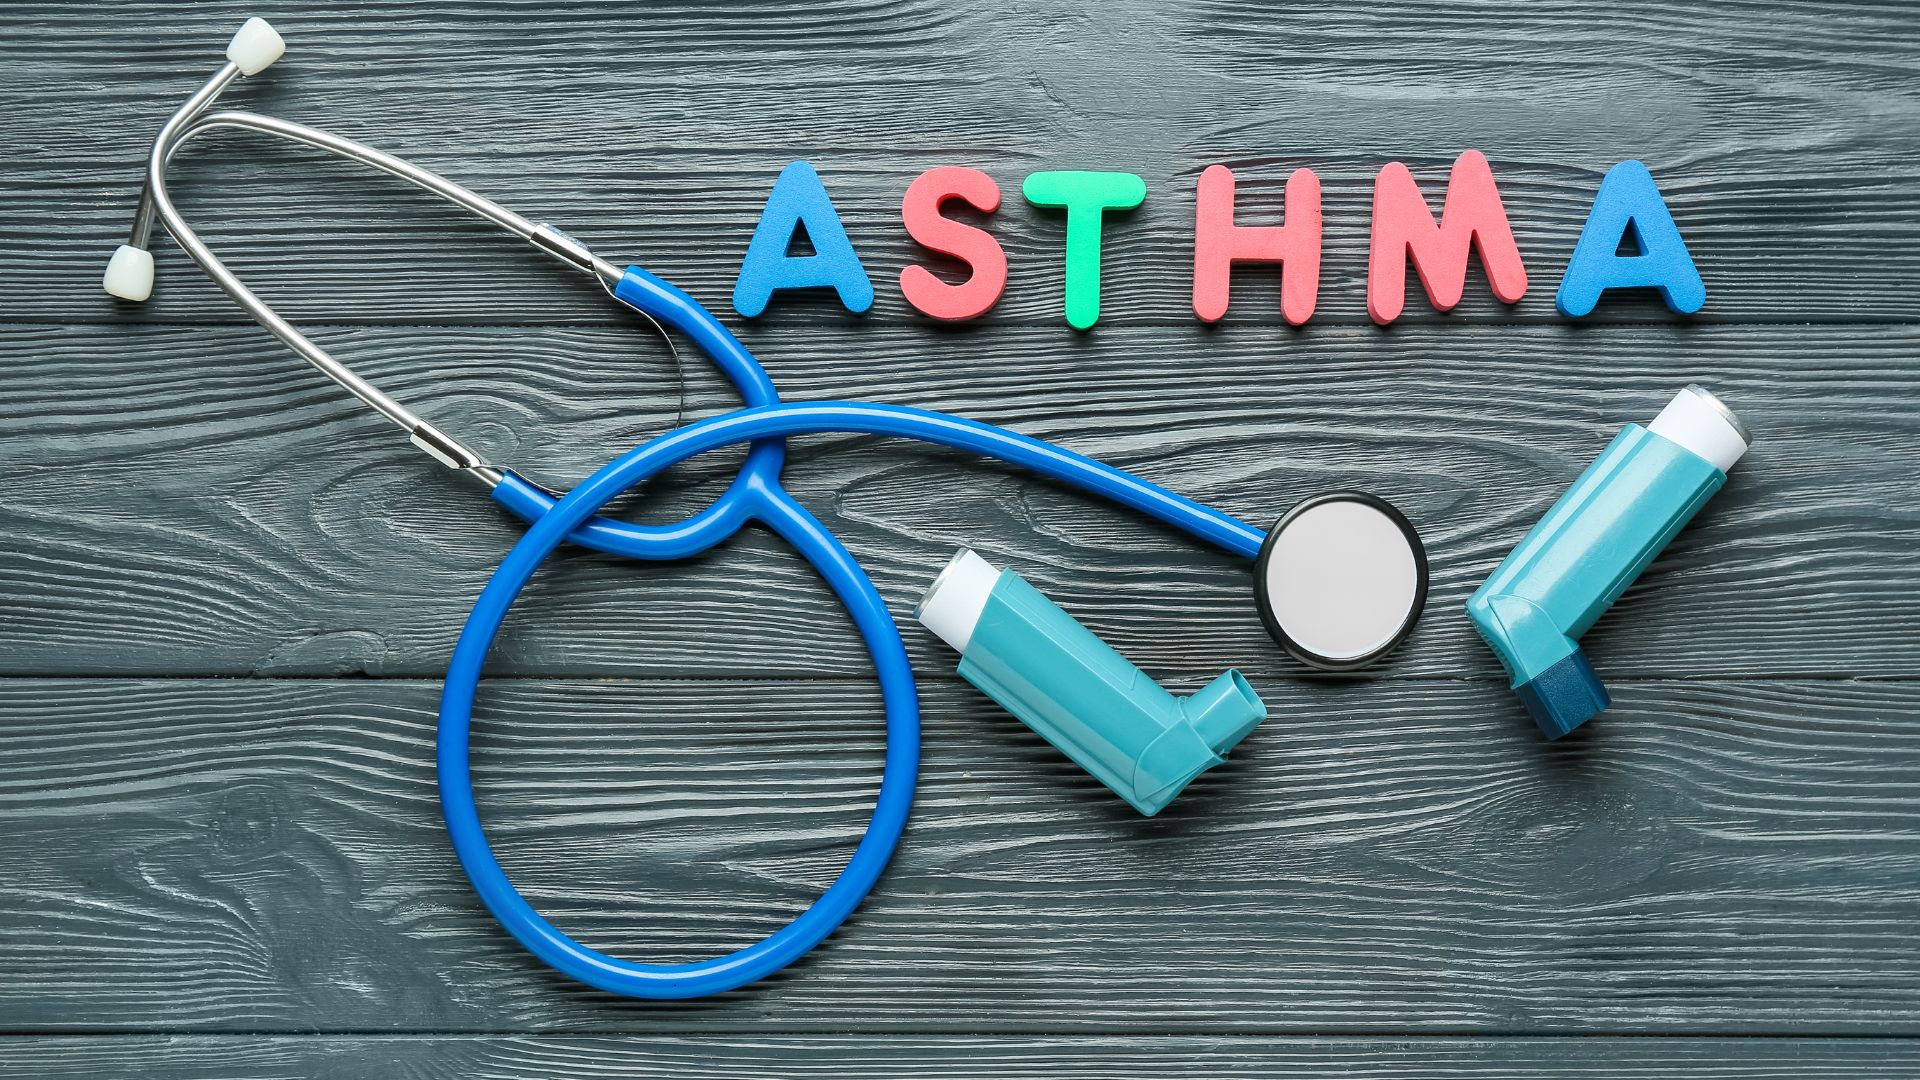 asthma